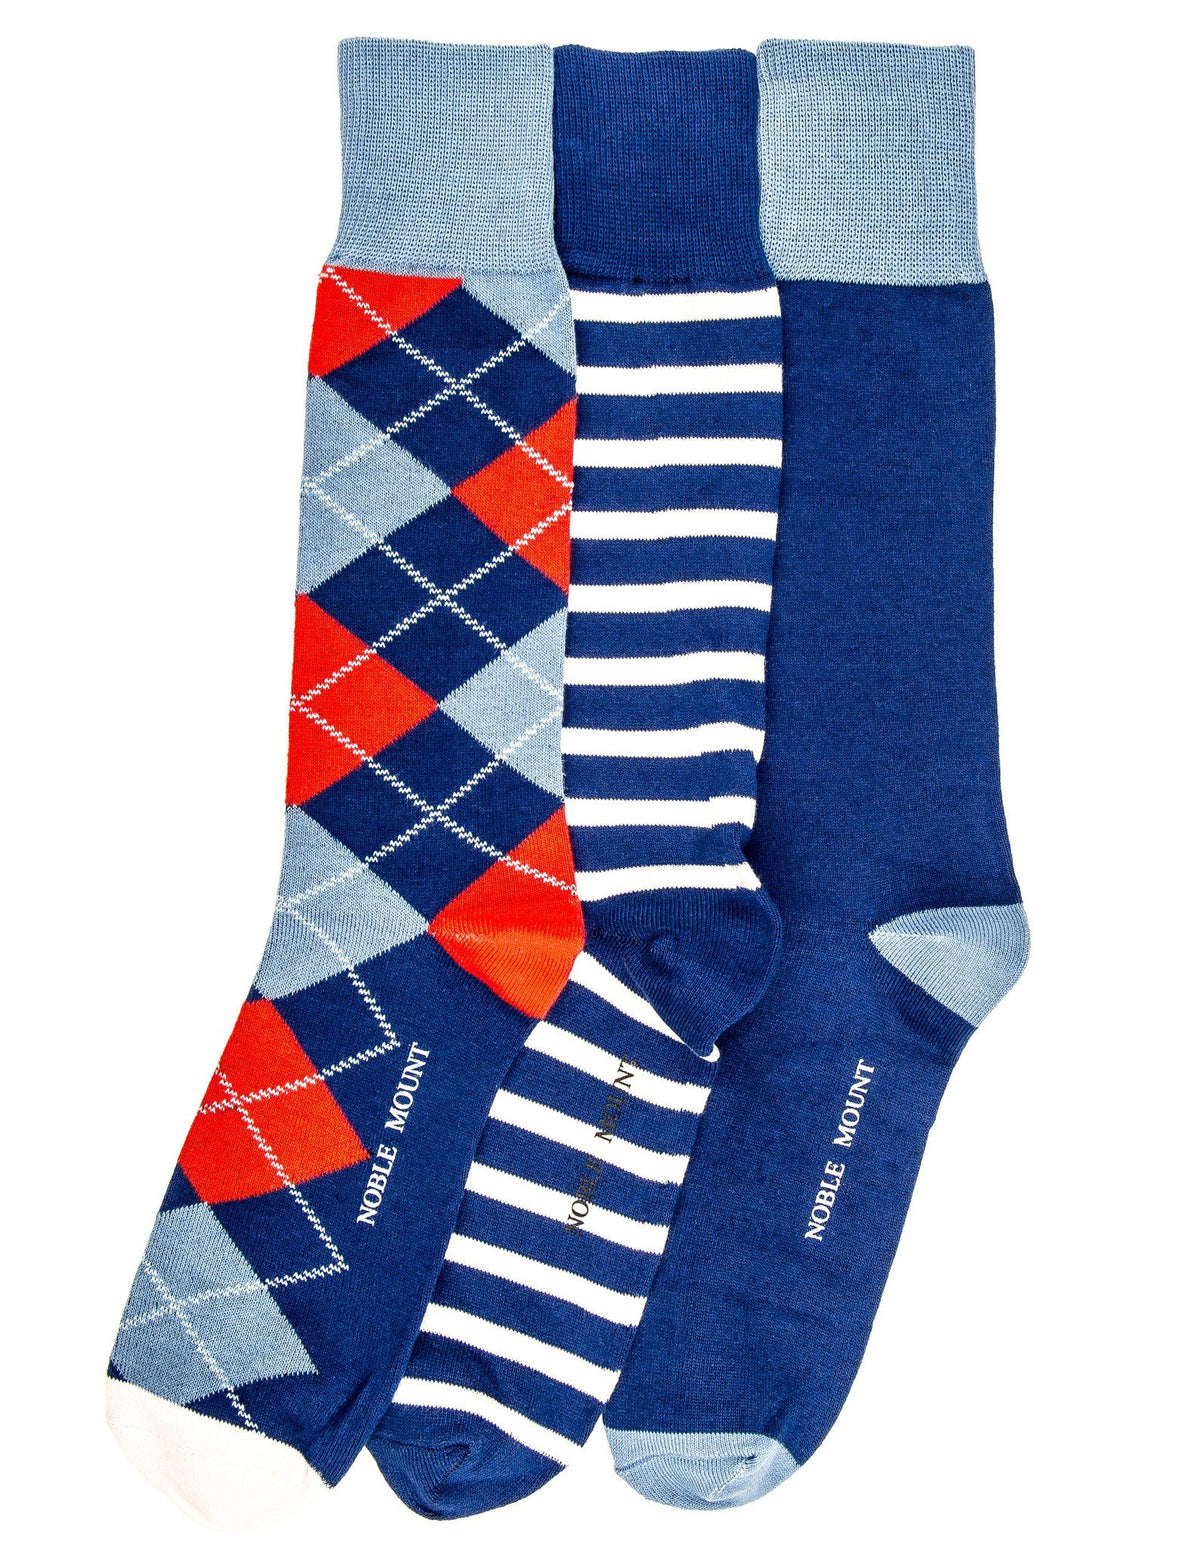 Men's Combed Cotton Dress Socks 3-Pack - Set 4